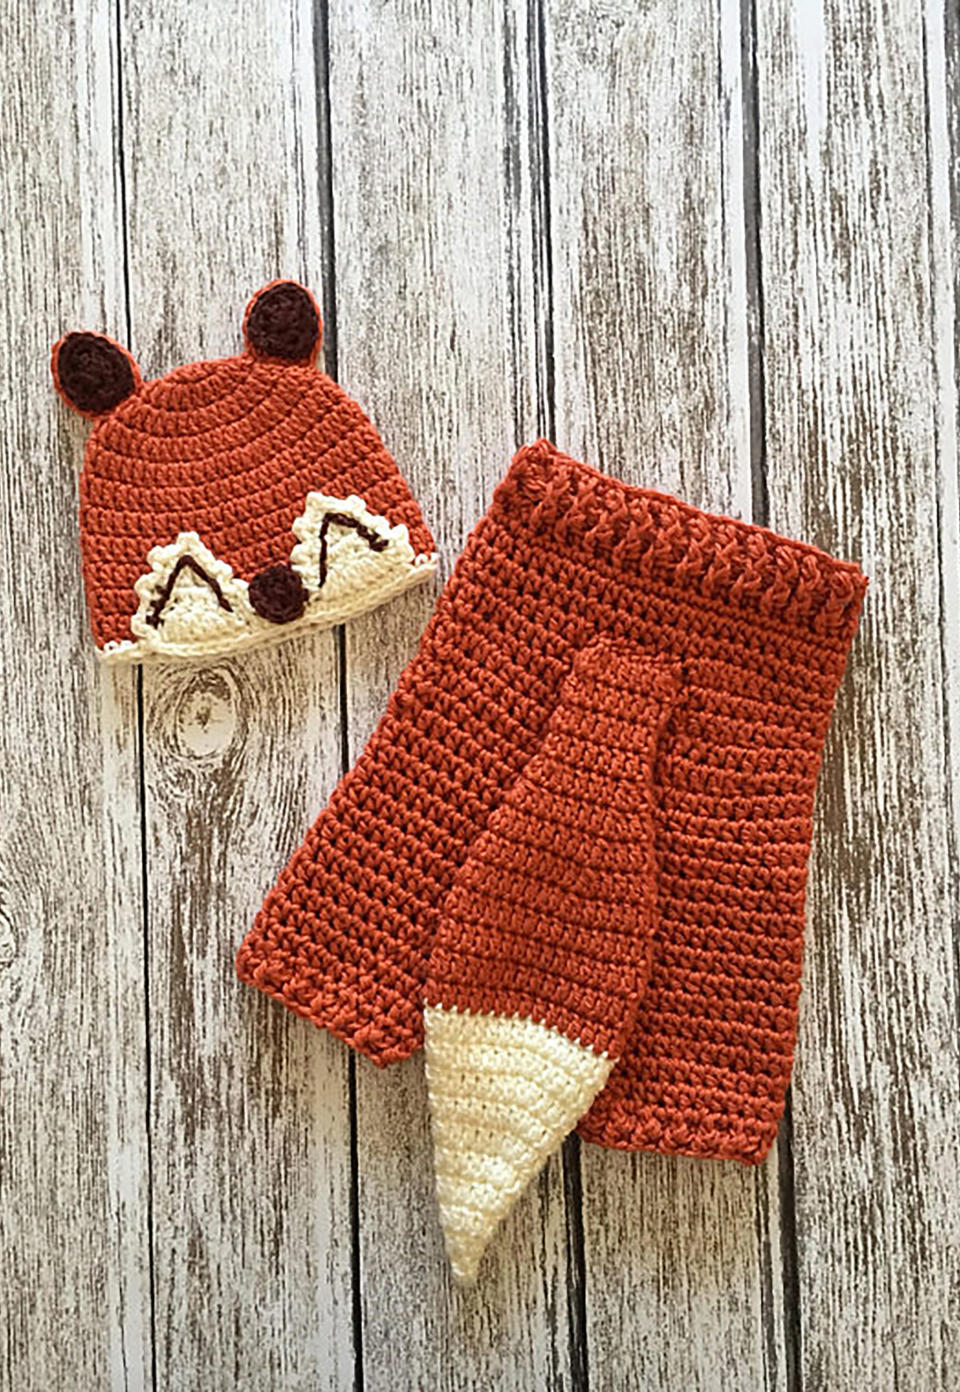 Crocheted Baby Fox Costume